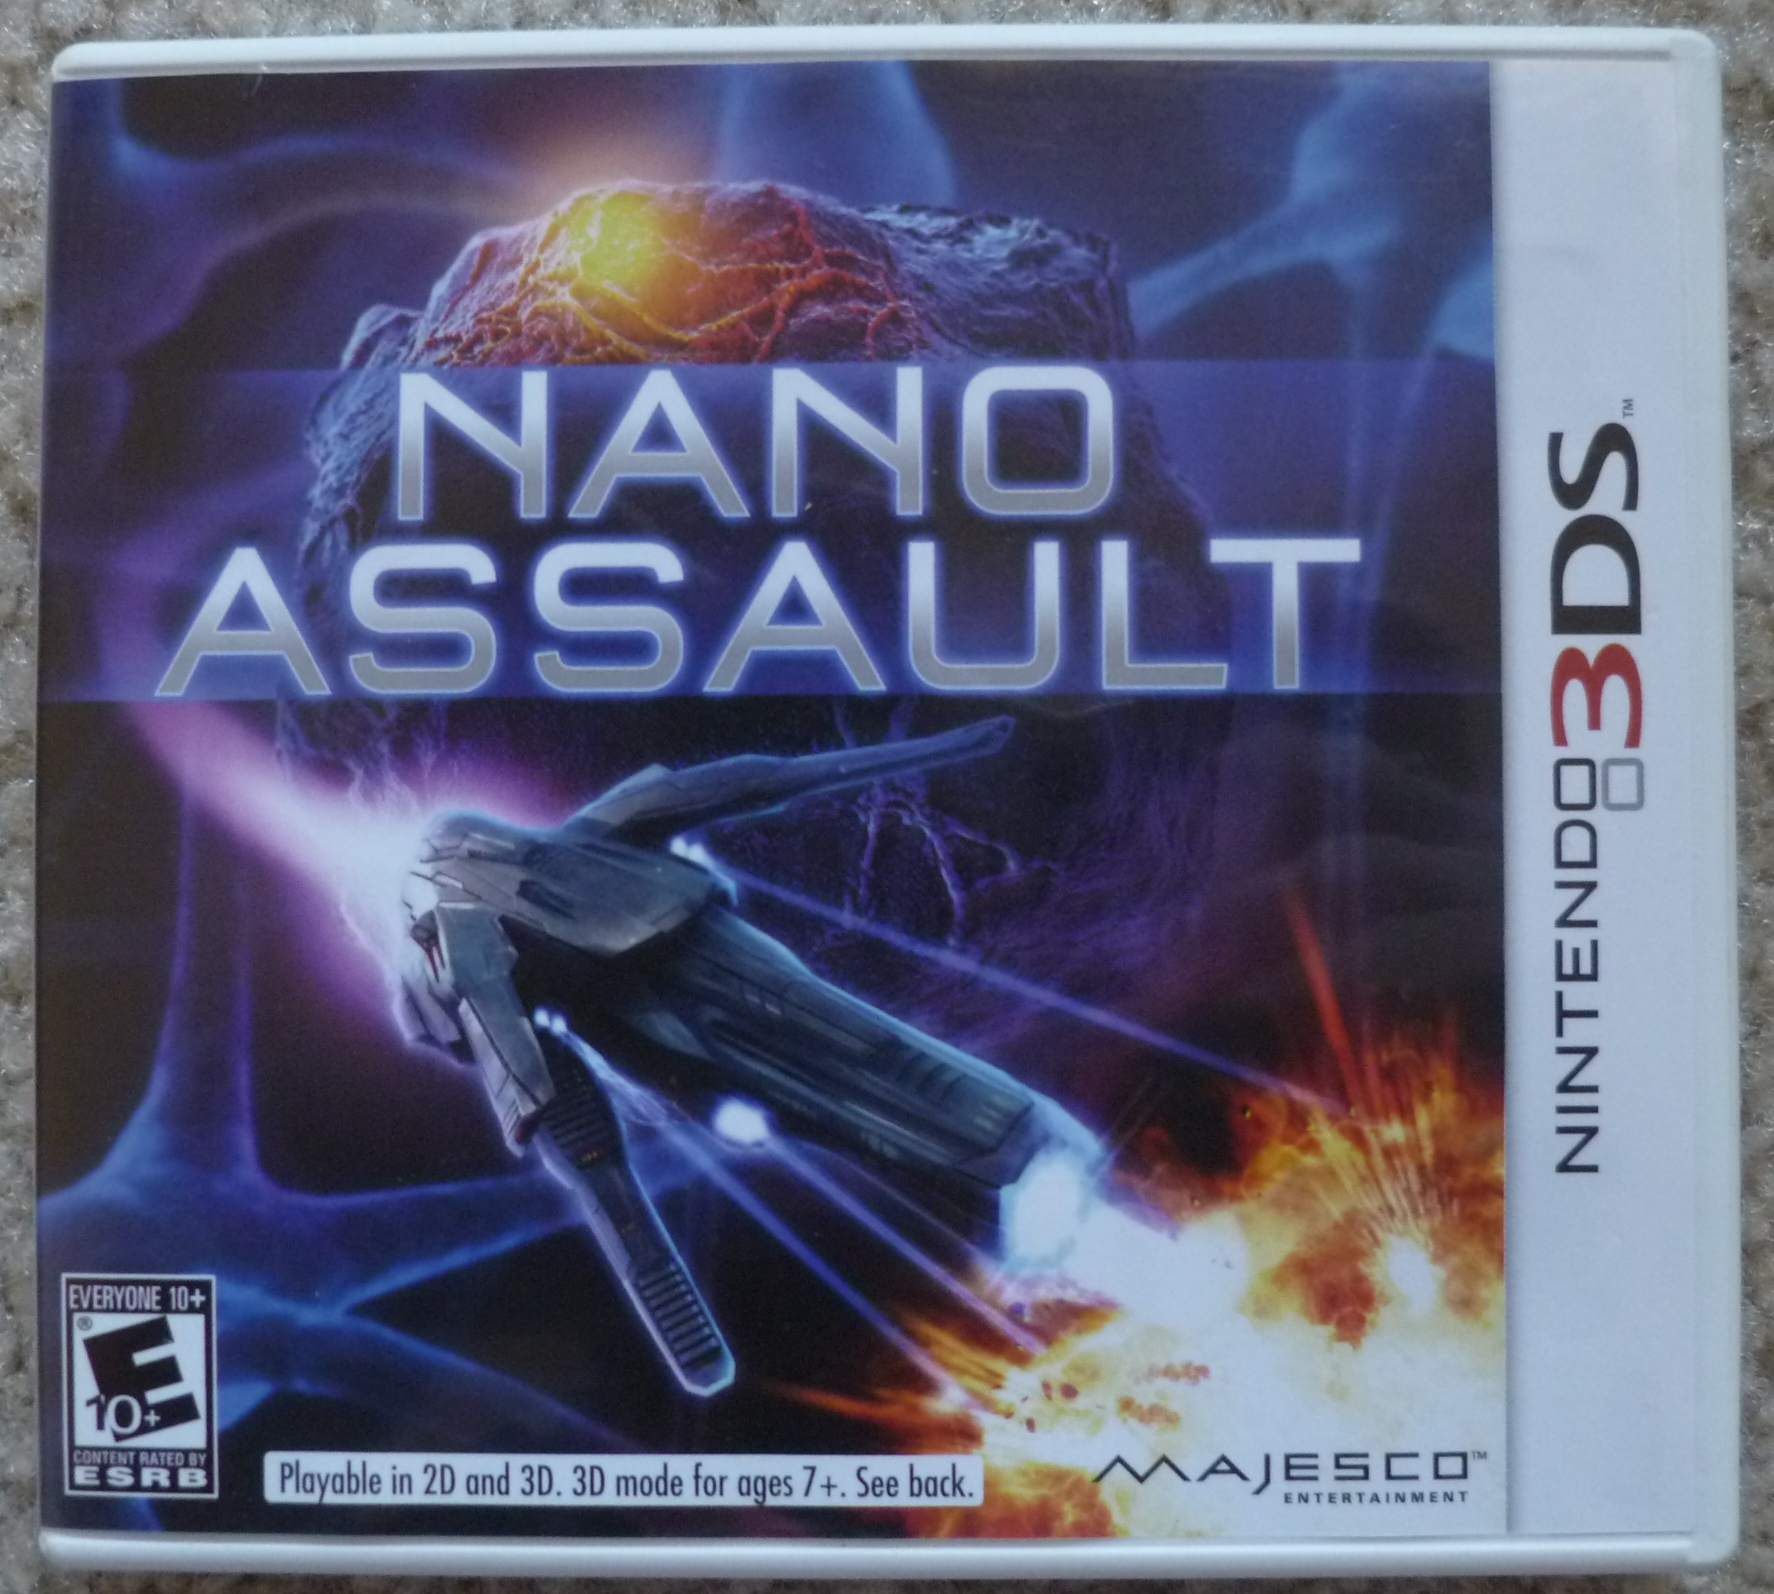 Nano Assault Cover